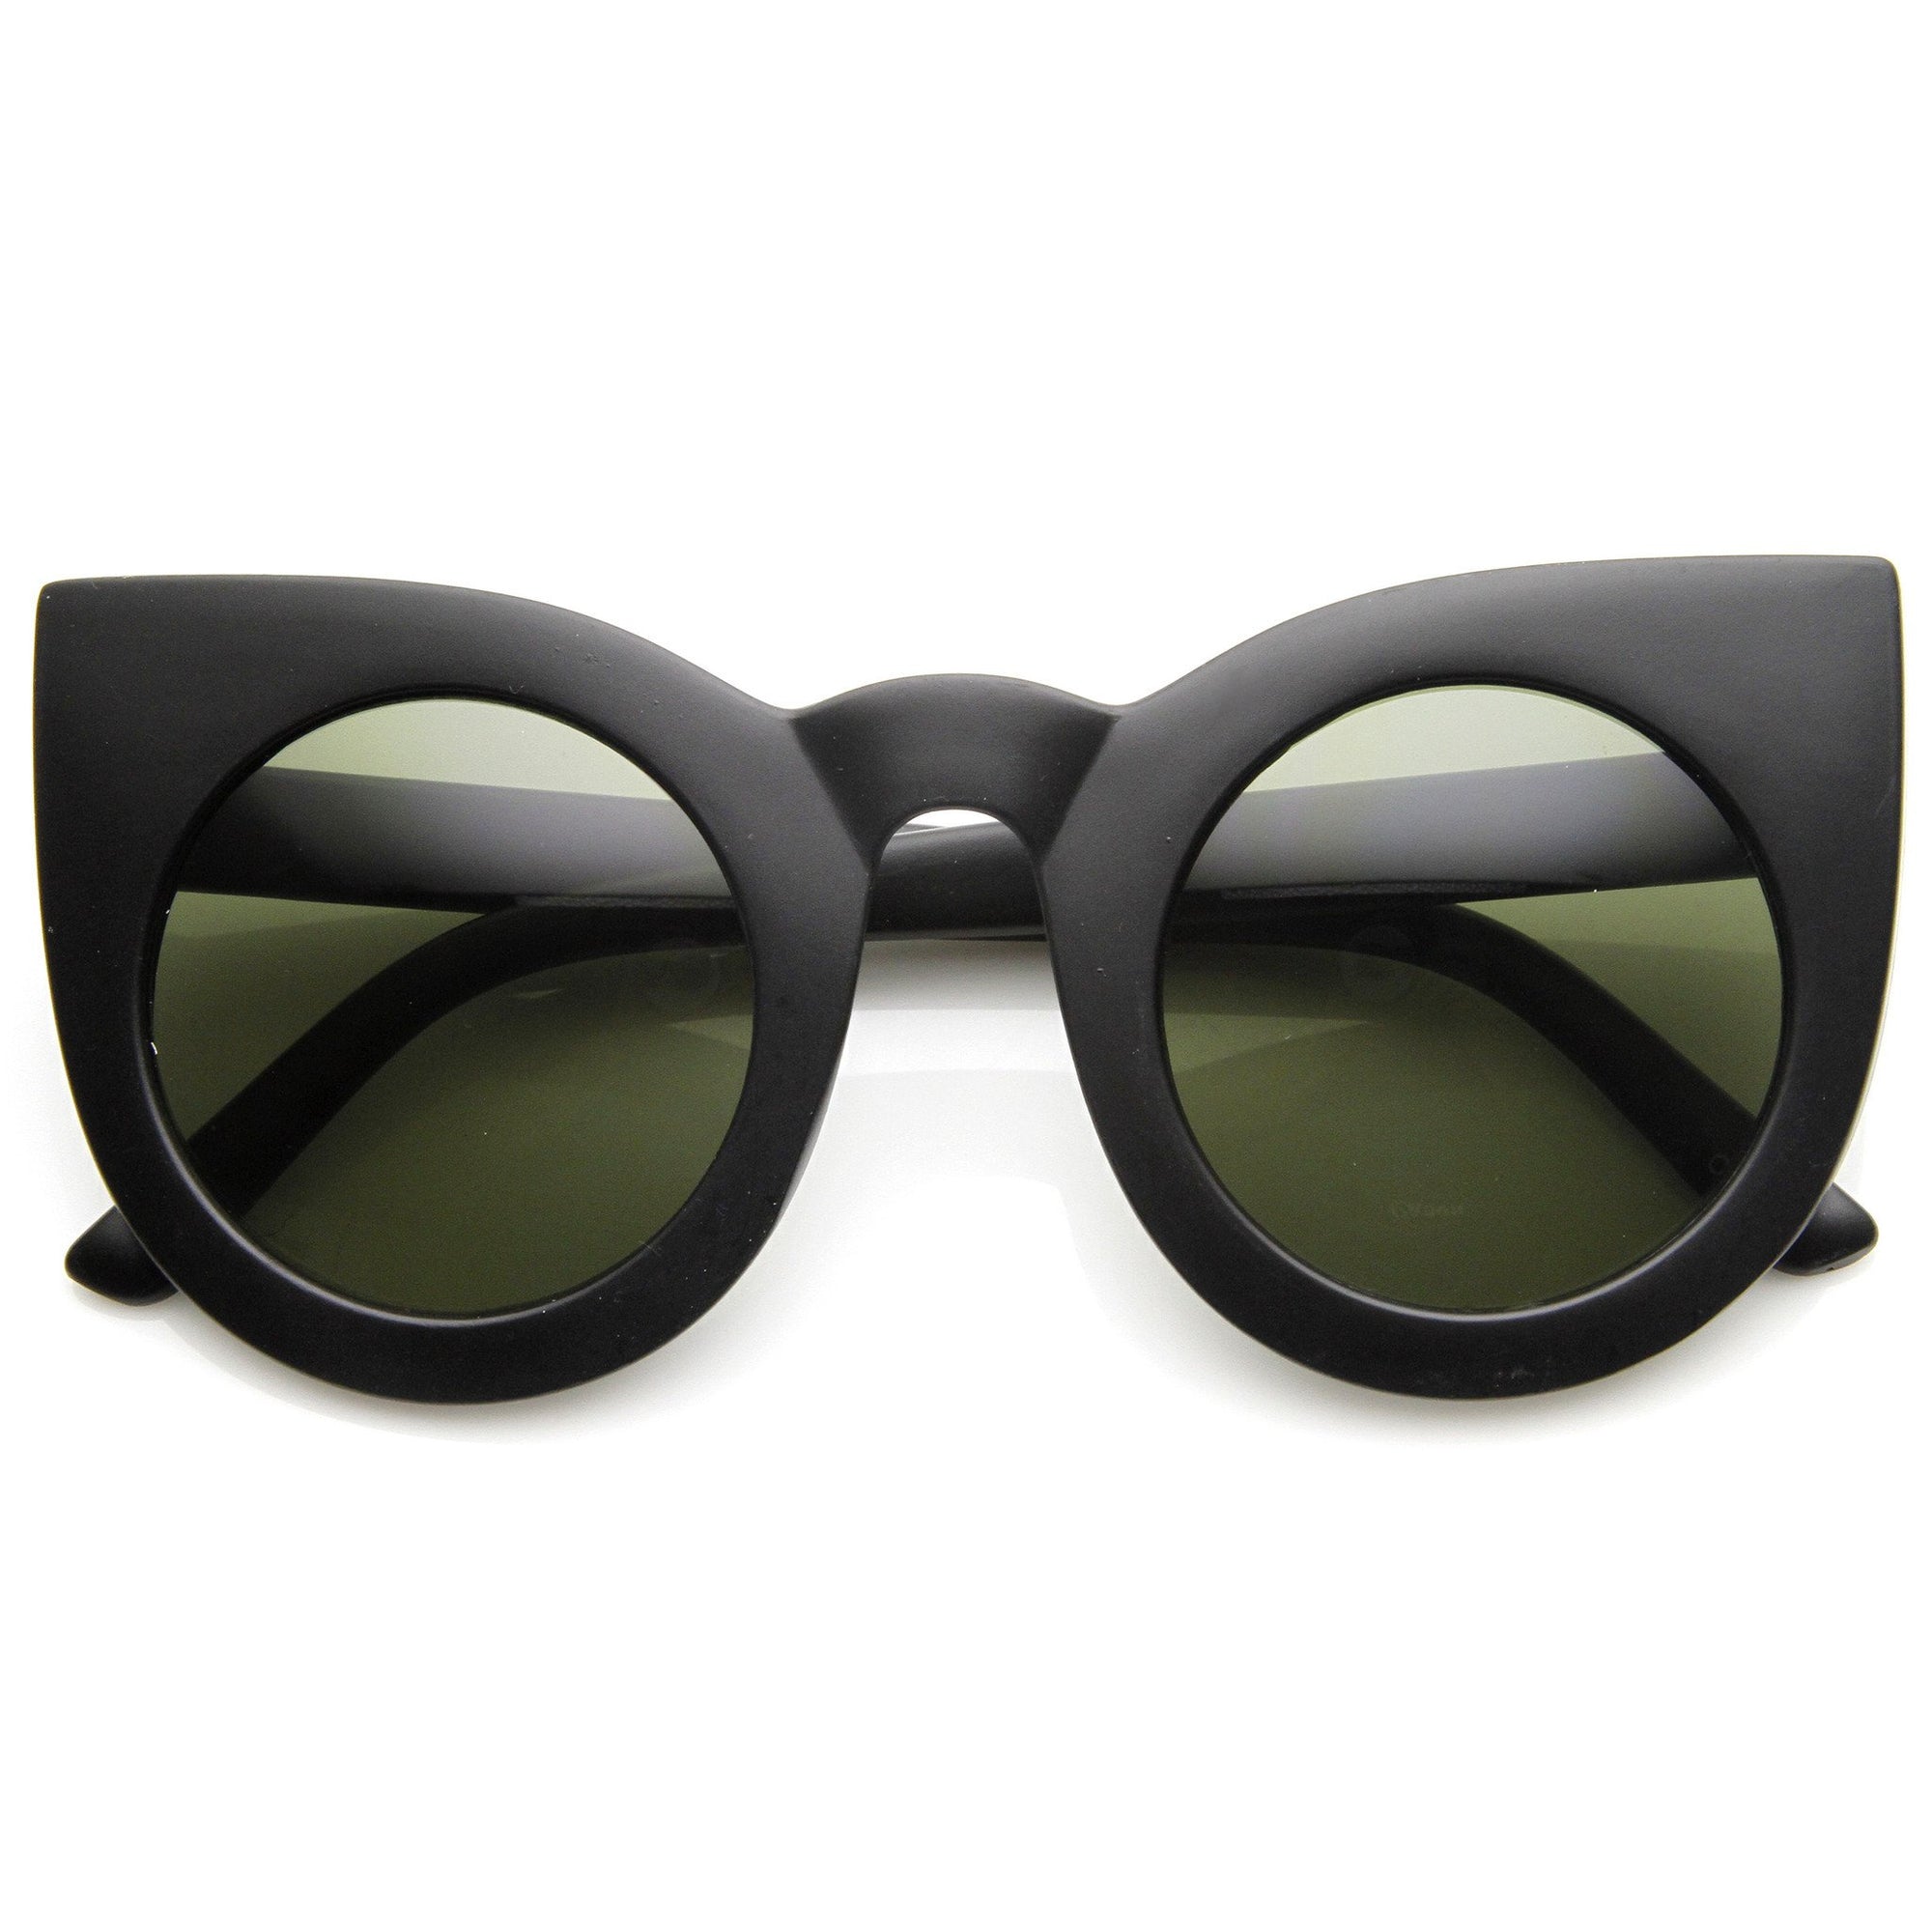  Dollger Retro Cat Eye Sunglasses for Women Hexagon